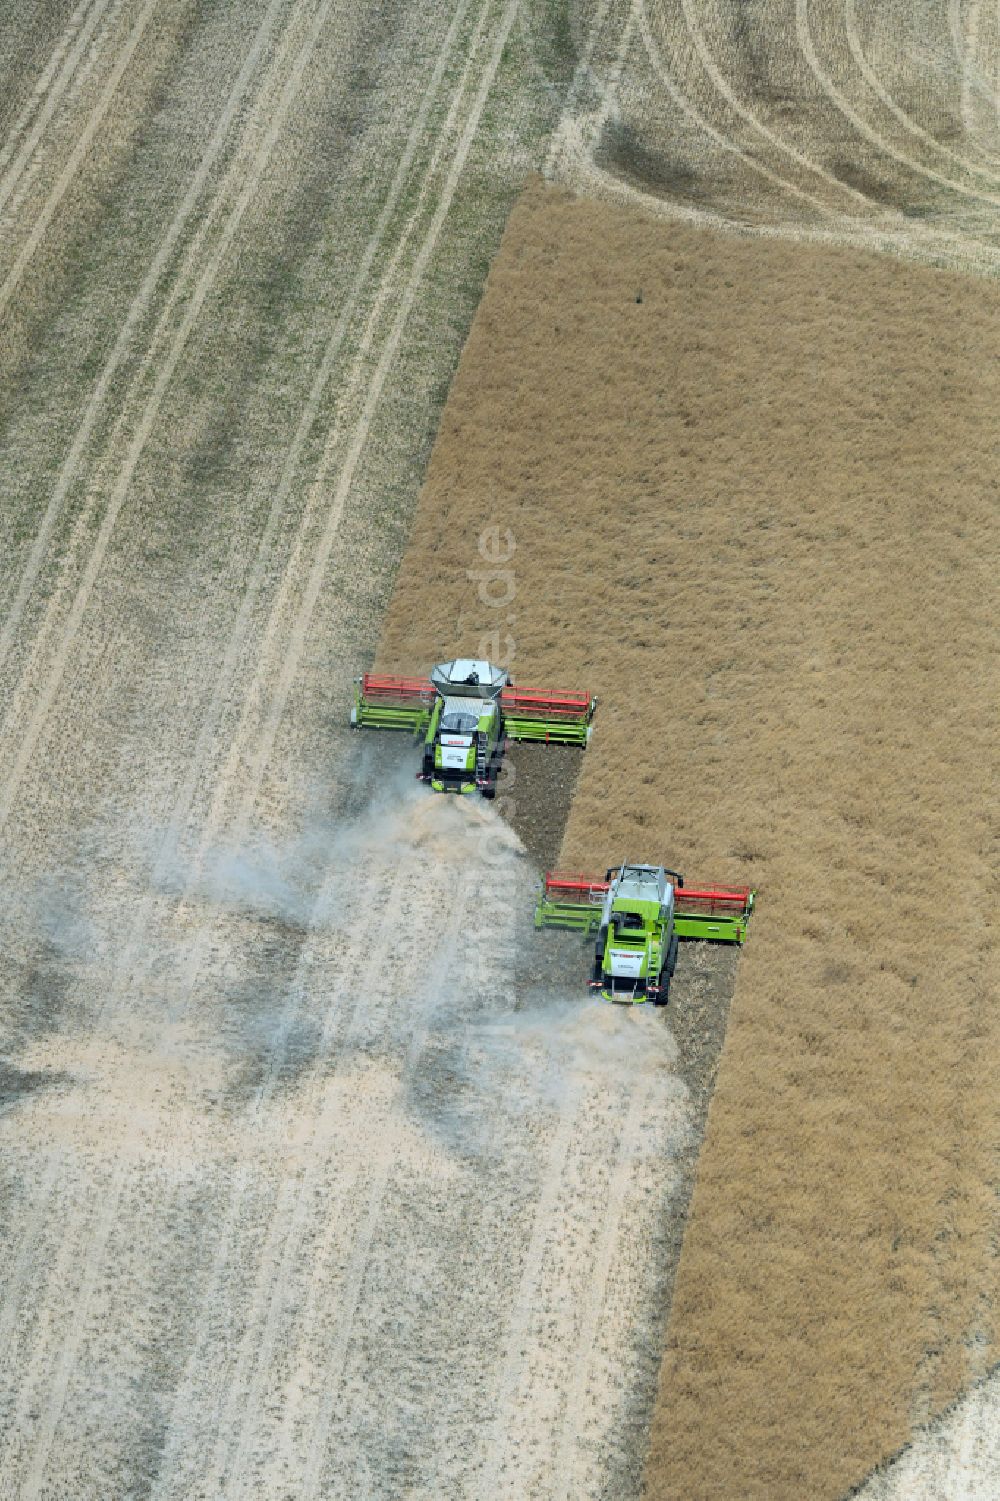 Luftbild Niedergrunstedt - Ernteeinsatz auf landwirtschaftlichen Feldern in Niedergrunstedt im Bundesland Thüringen, Deutschland